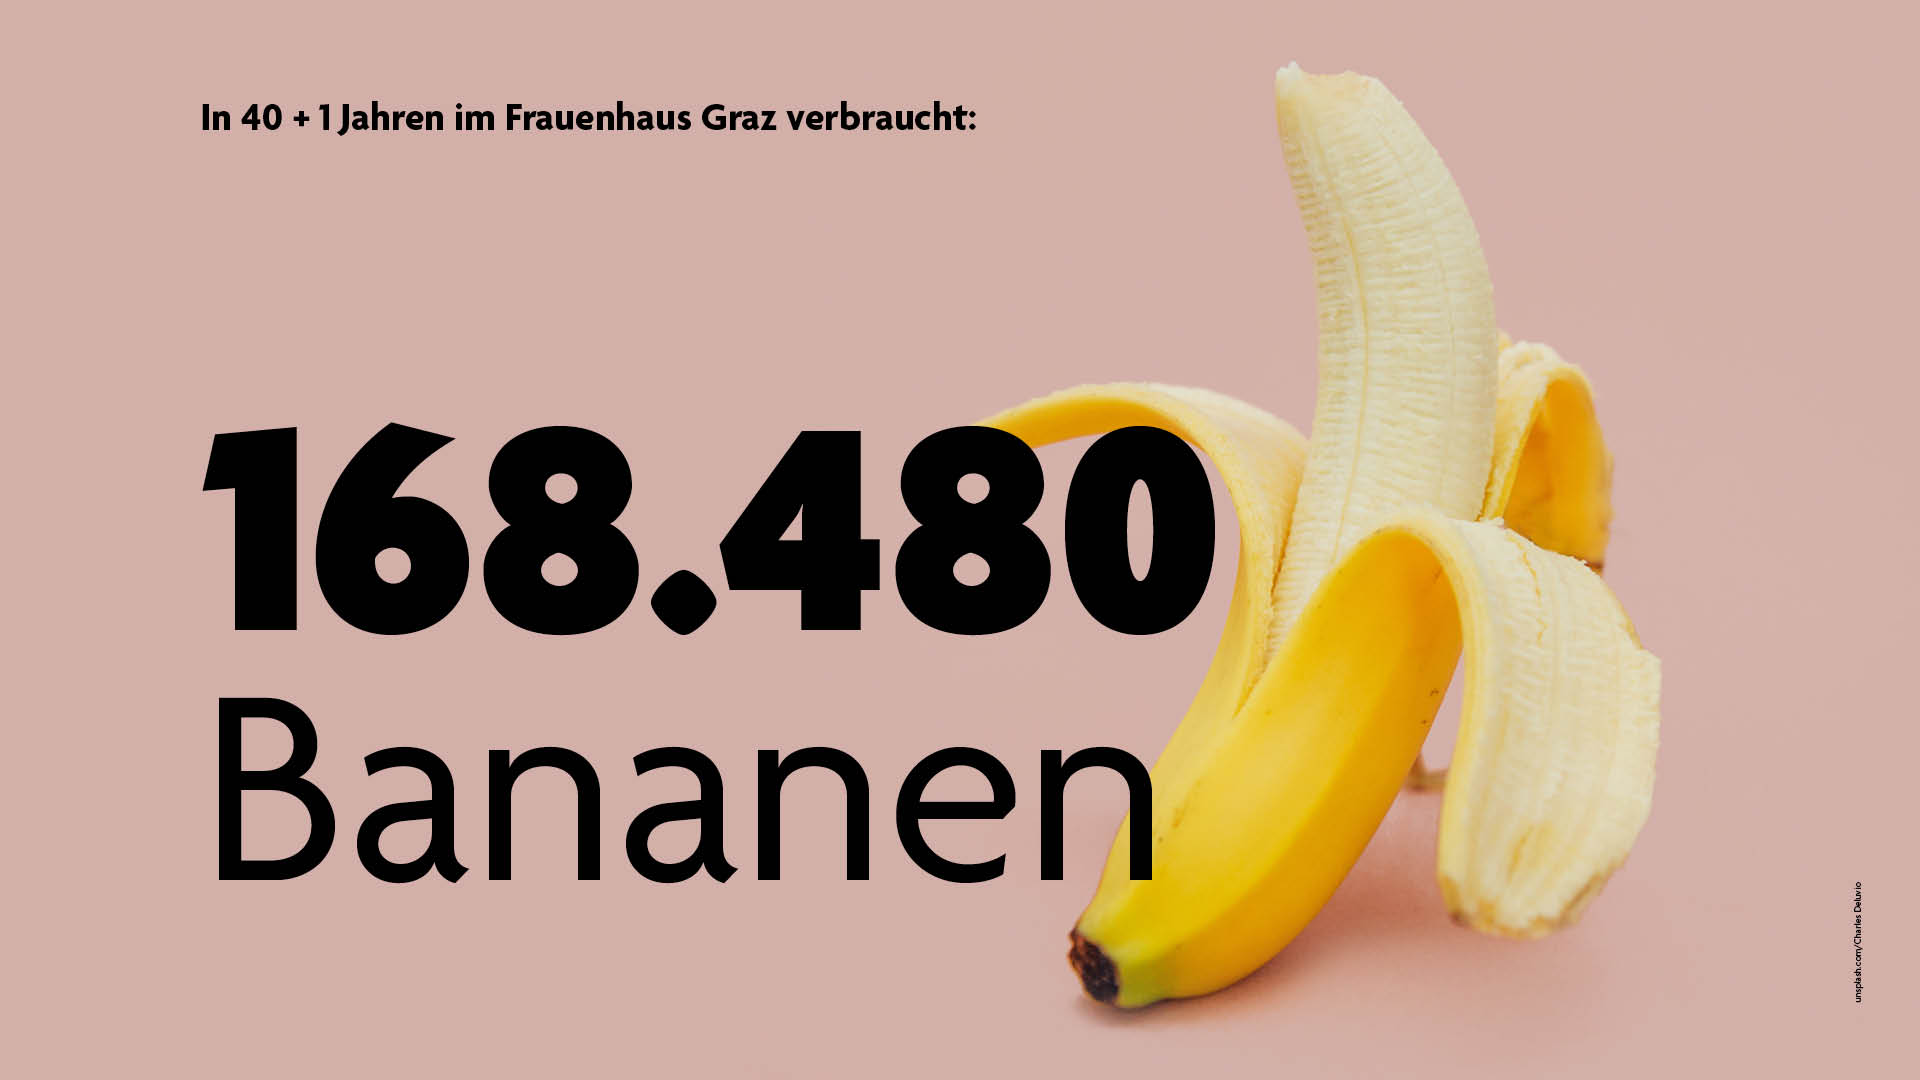 LOOK_Frauenhaeuser_web_Bananen_c_unsplash